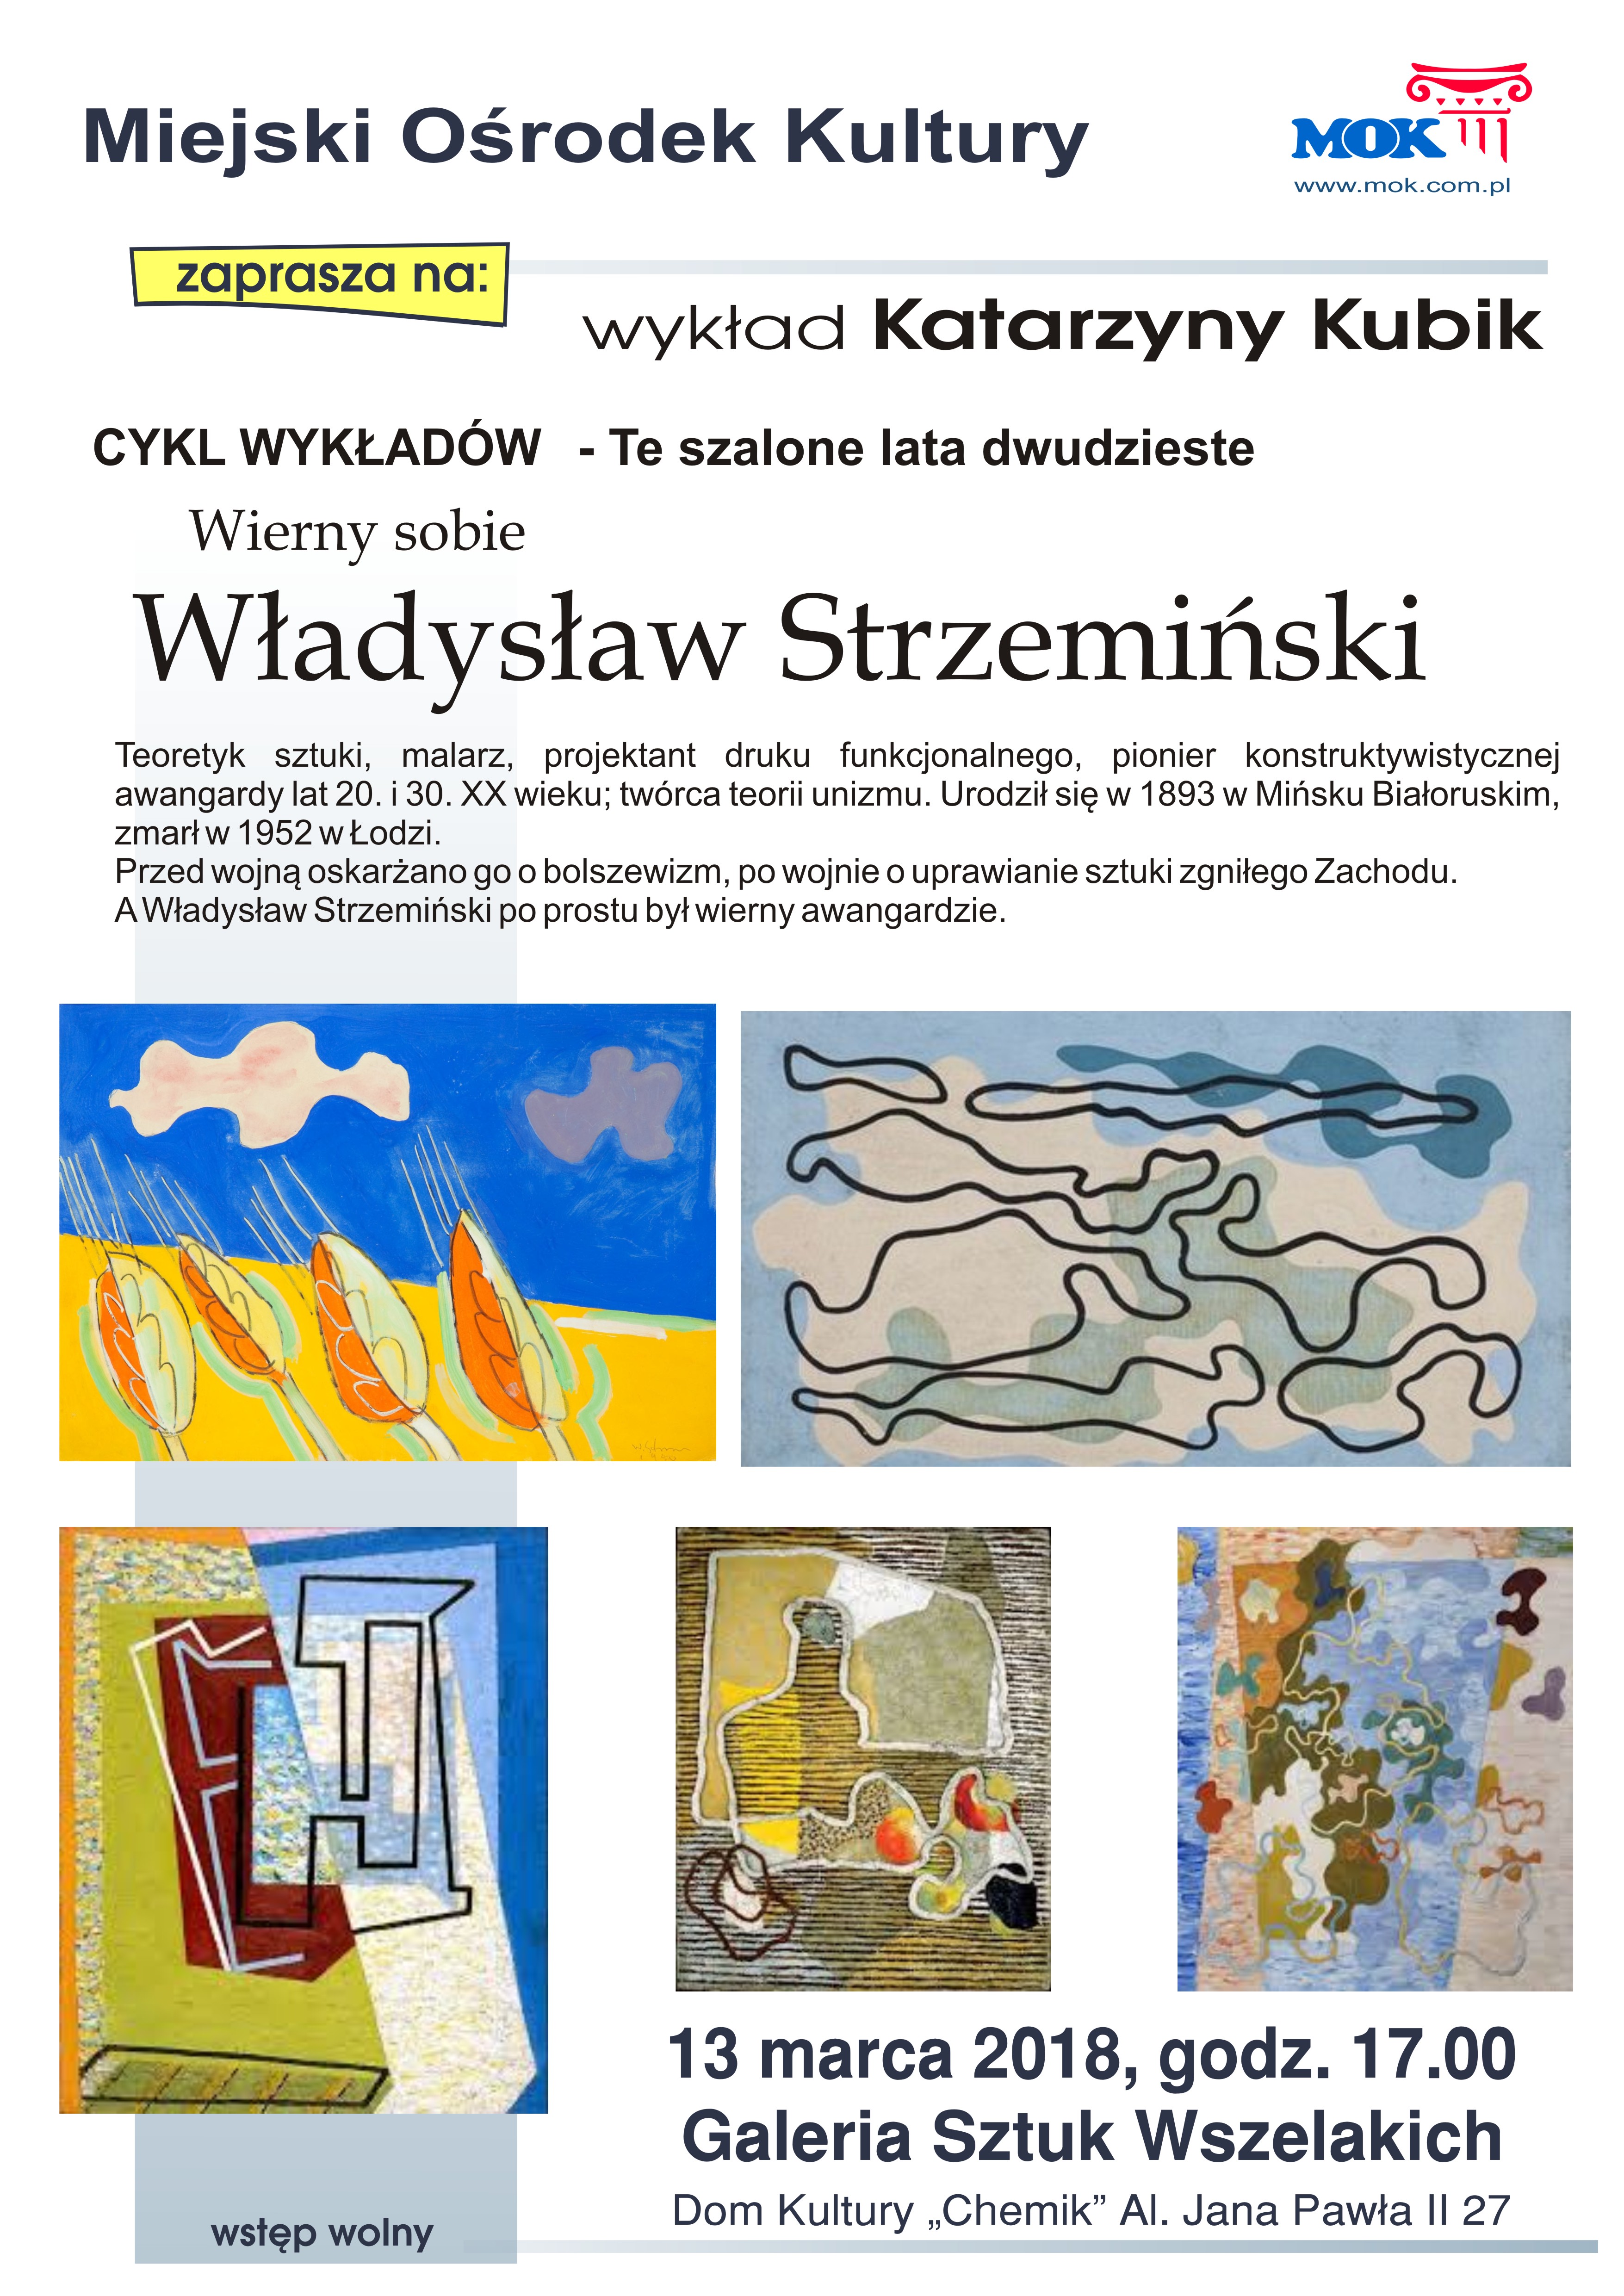 Władysław Strzemiński